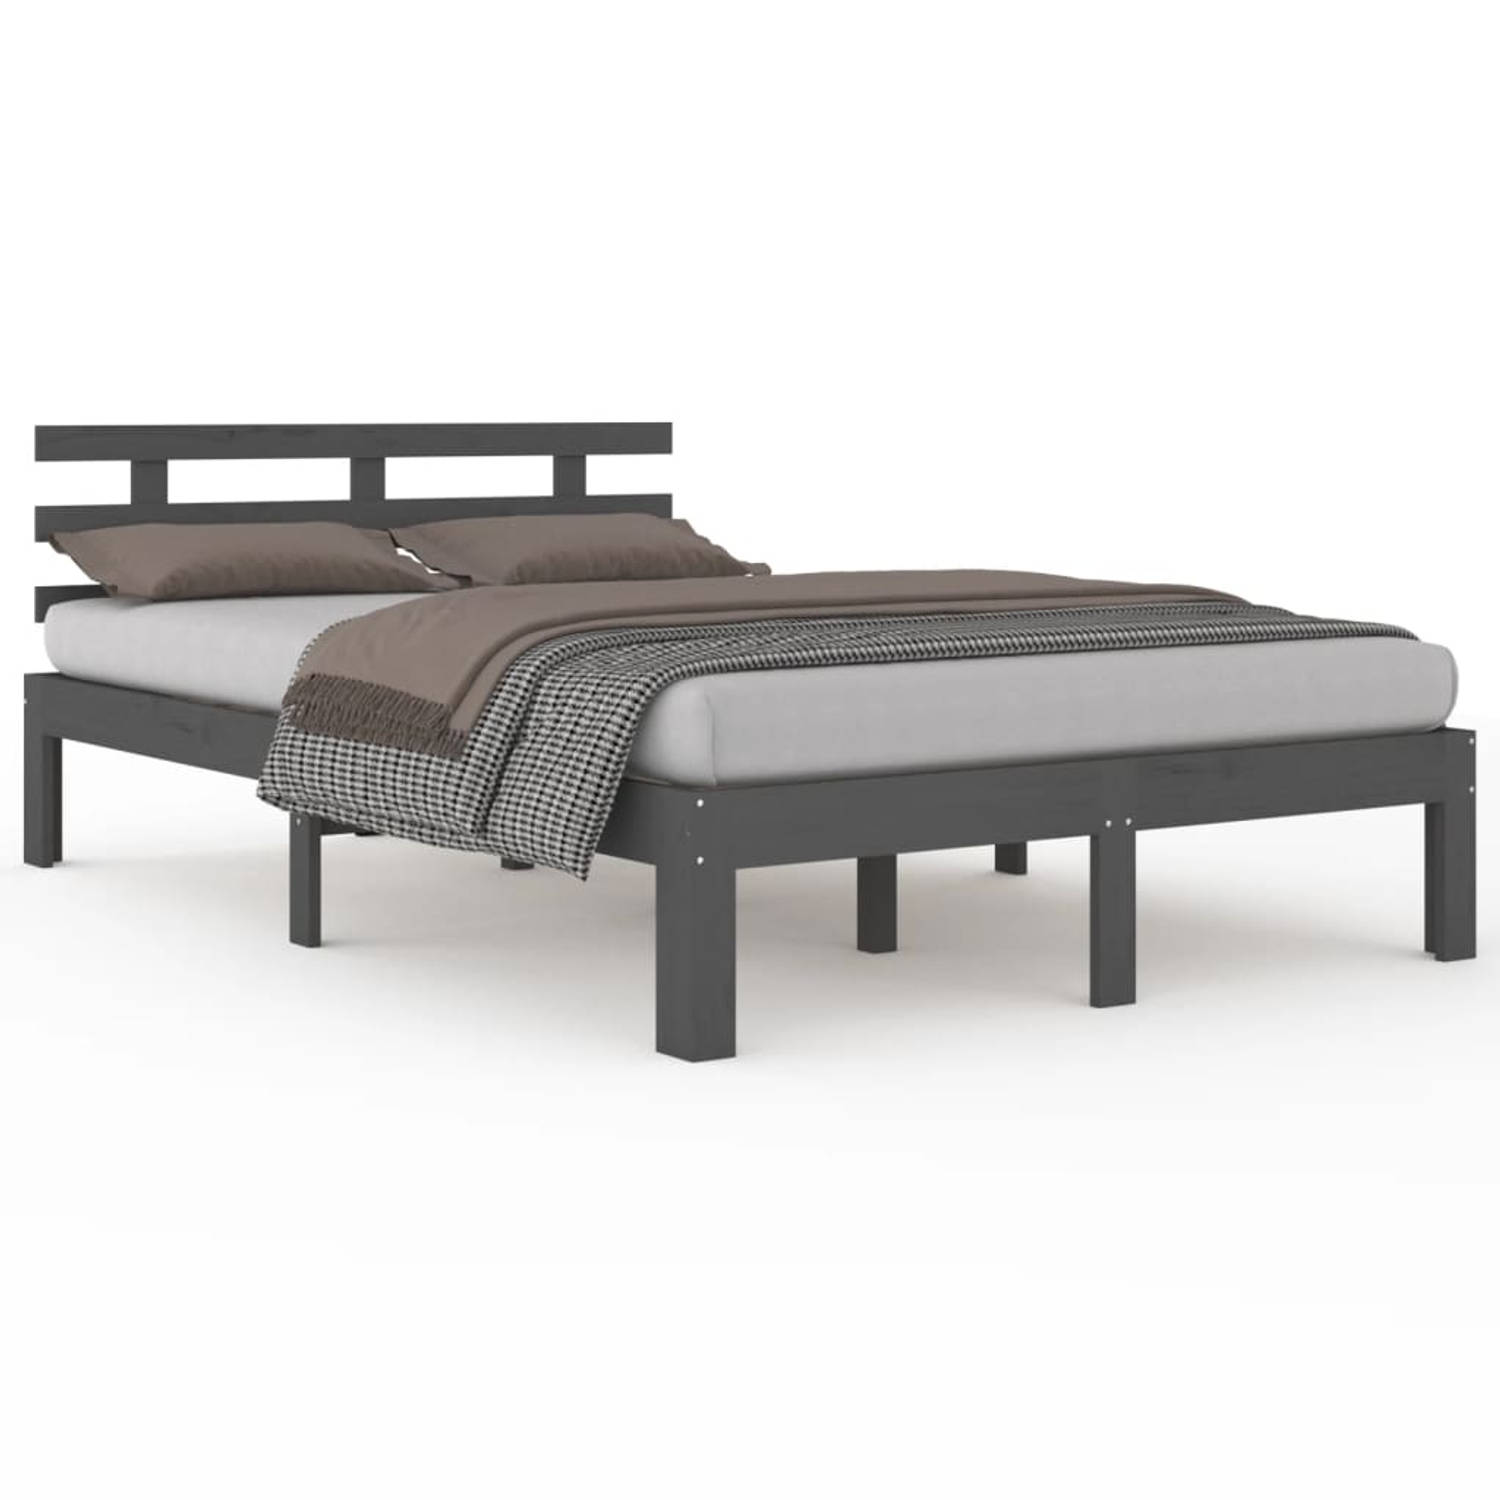 The Living Store Bedframe massief hout grijs 140x190 cm - Bedframe - Bedframes - Bed - Bedbodem - Ledikant - Bed Frame - Massief Houten Bedframe - Slaapmeubel - Tweepersoonsbed - B